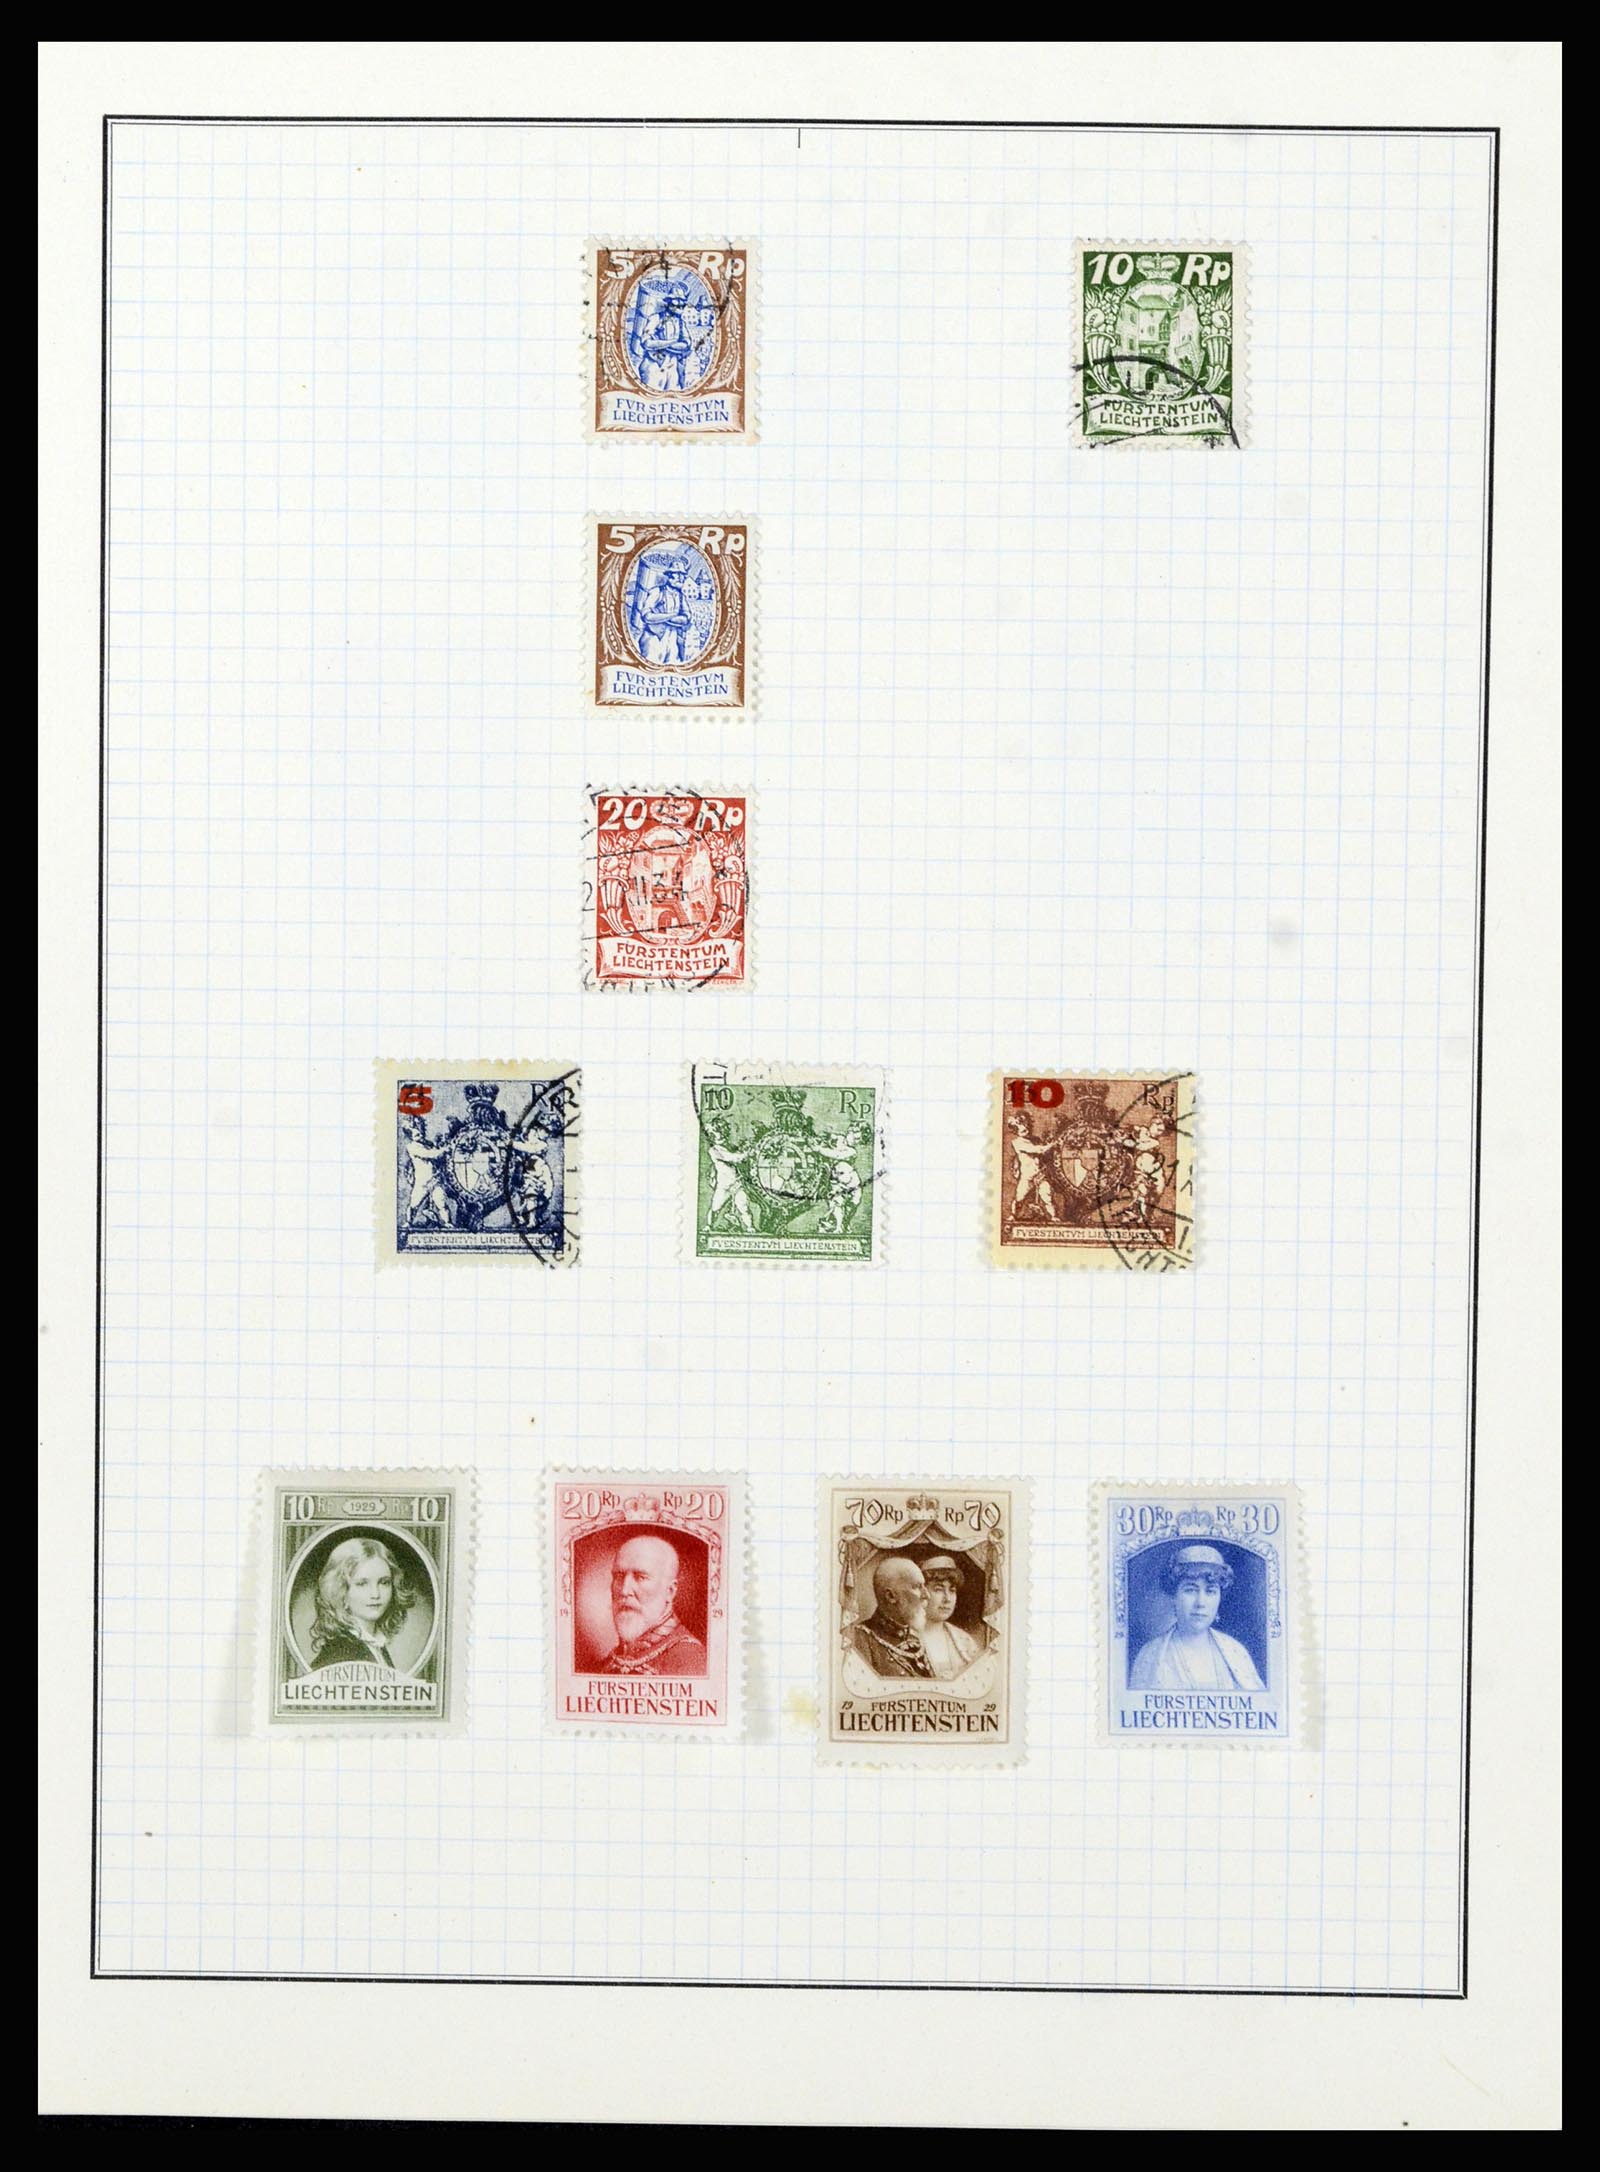 36766 008 - Stamp collection 36766 Liechtenstein 1912-1955.